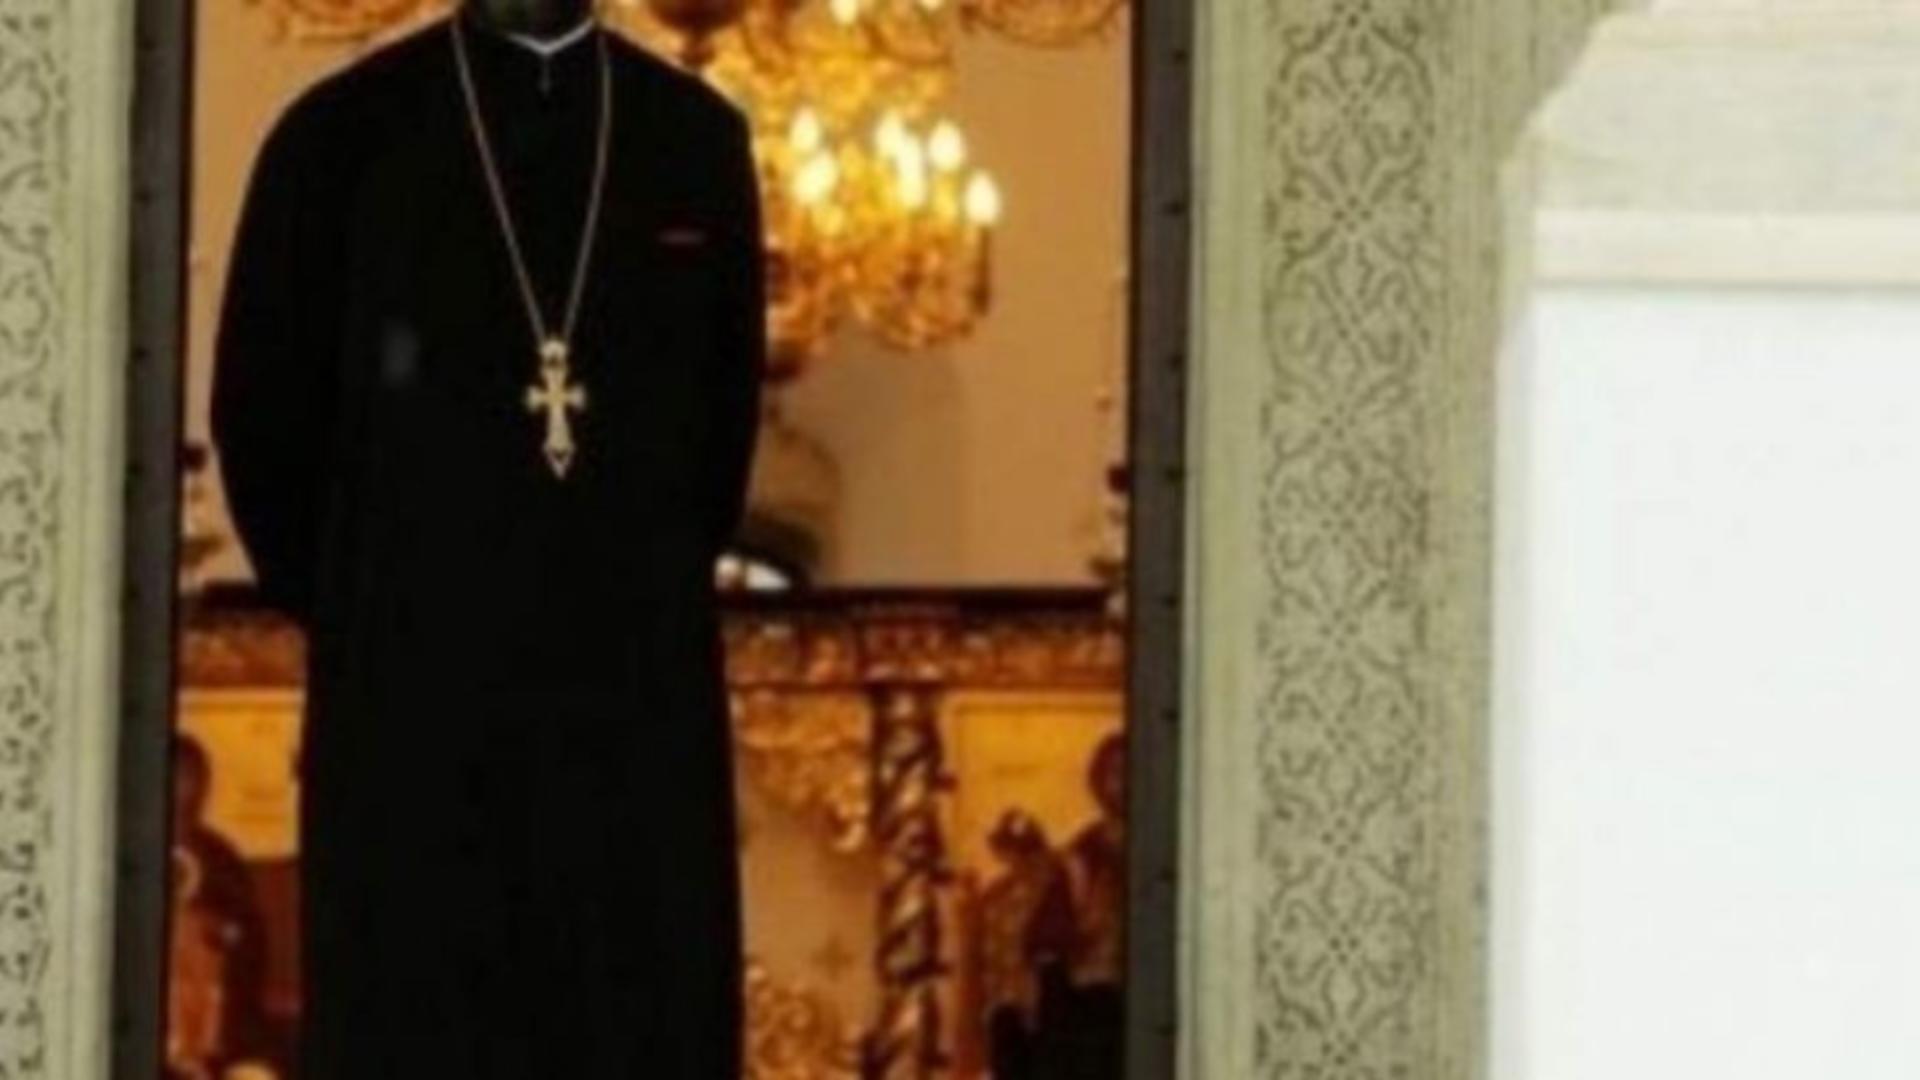 Arhiepiscopiei Iașilor a confirmat că preotul nu mai slujește